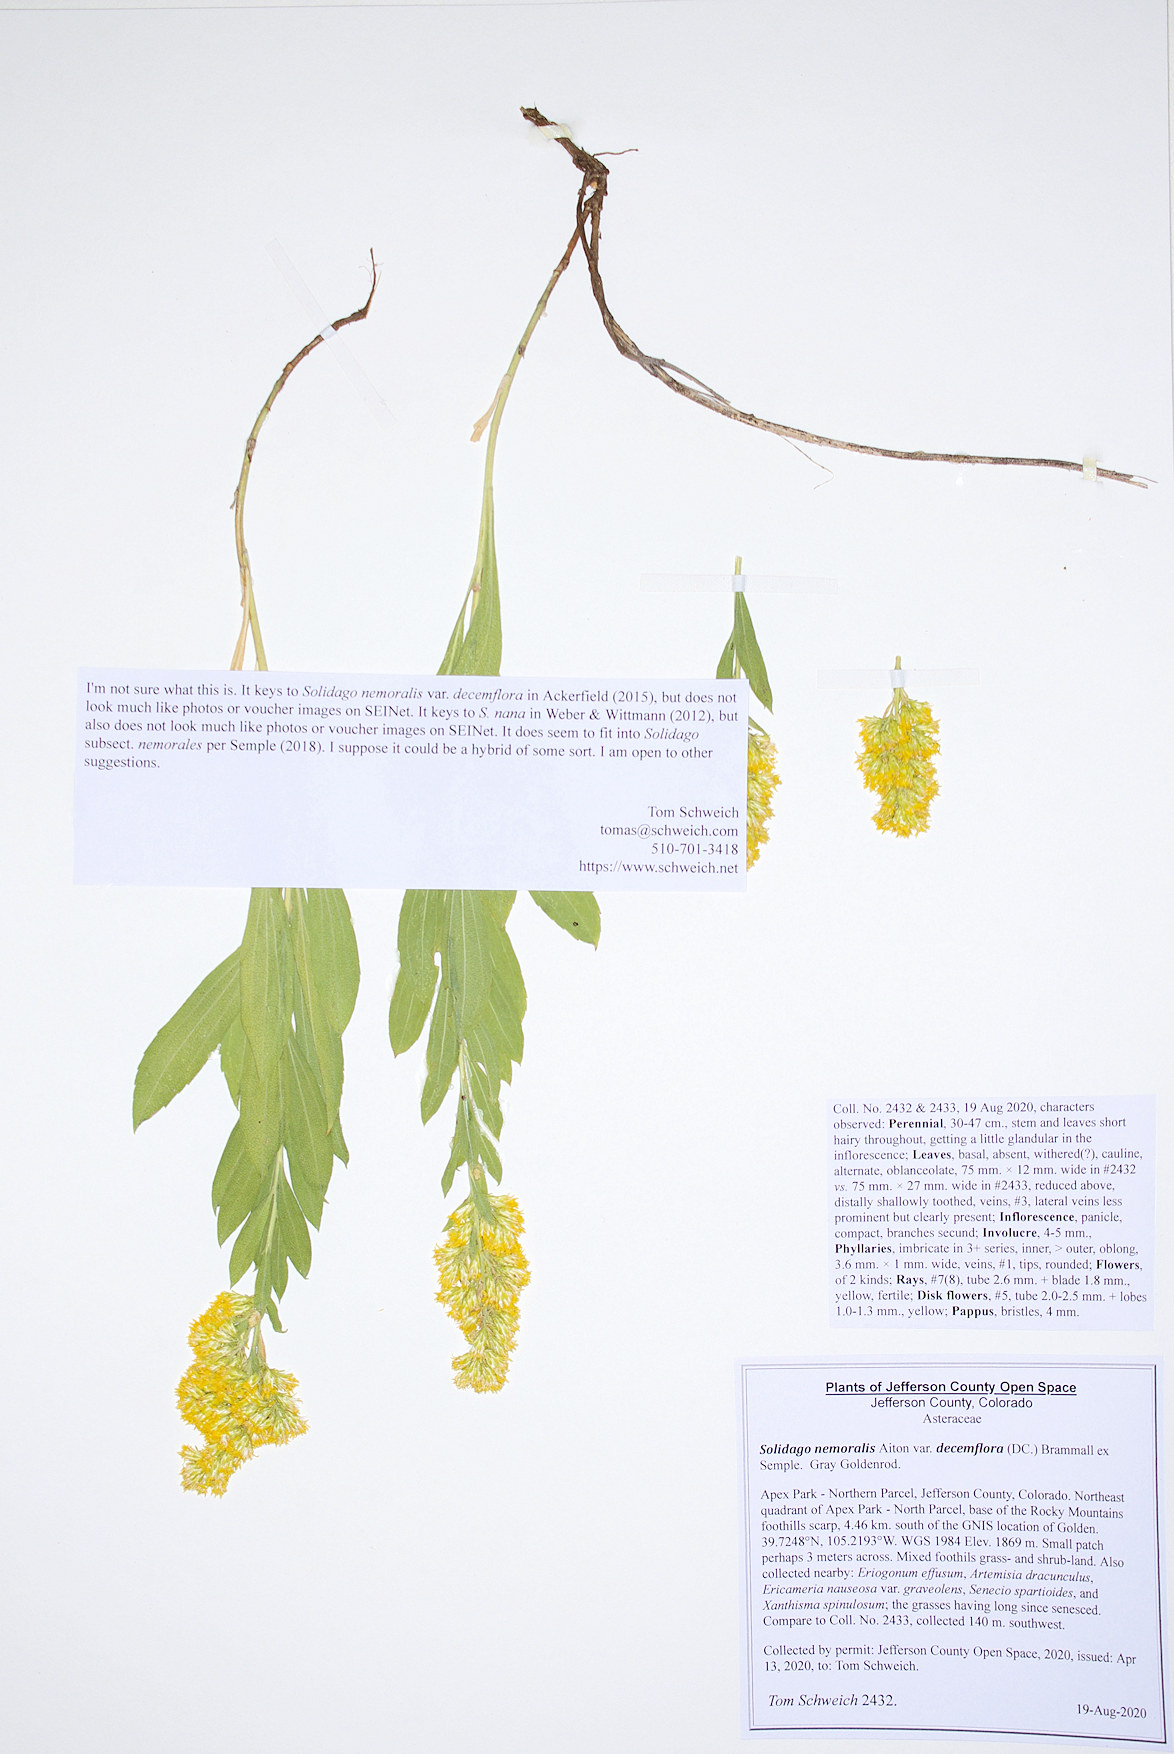 Asteraceae Solidago nemoralis decemflora